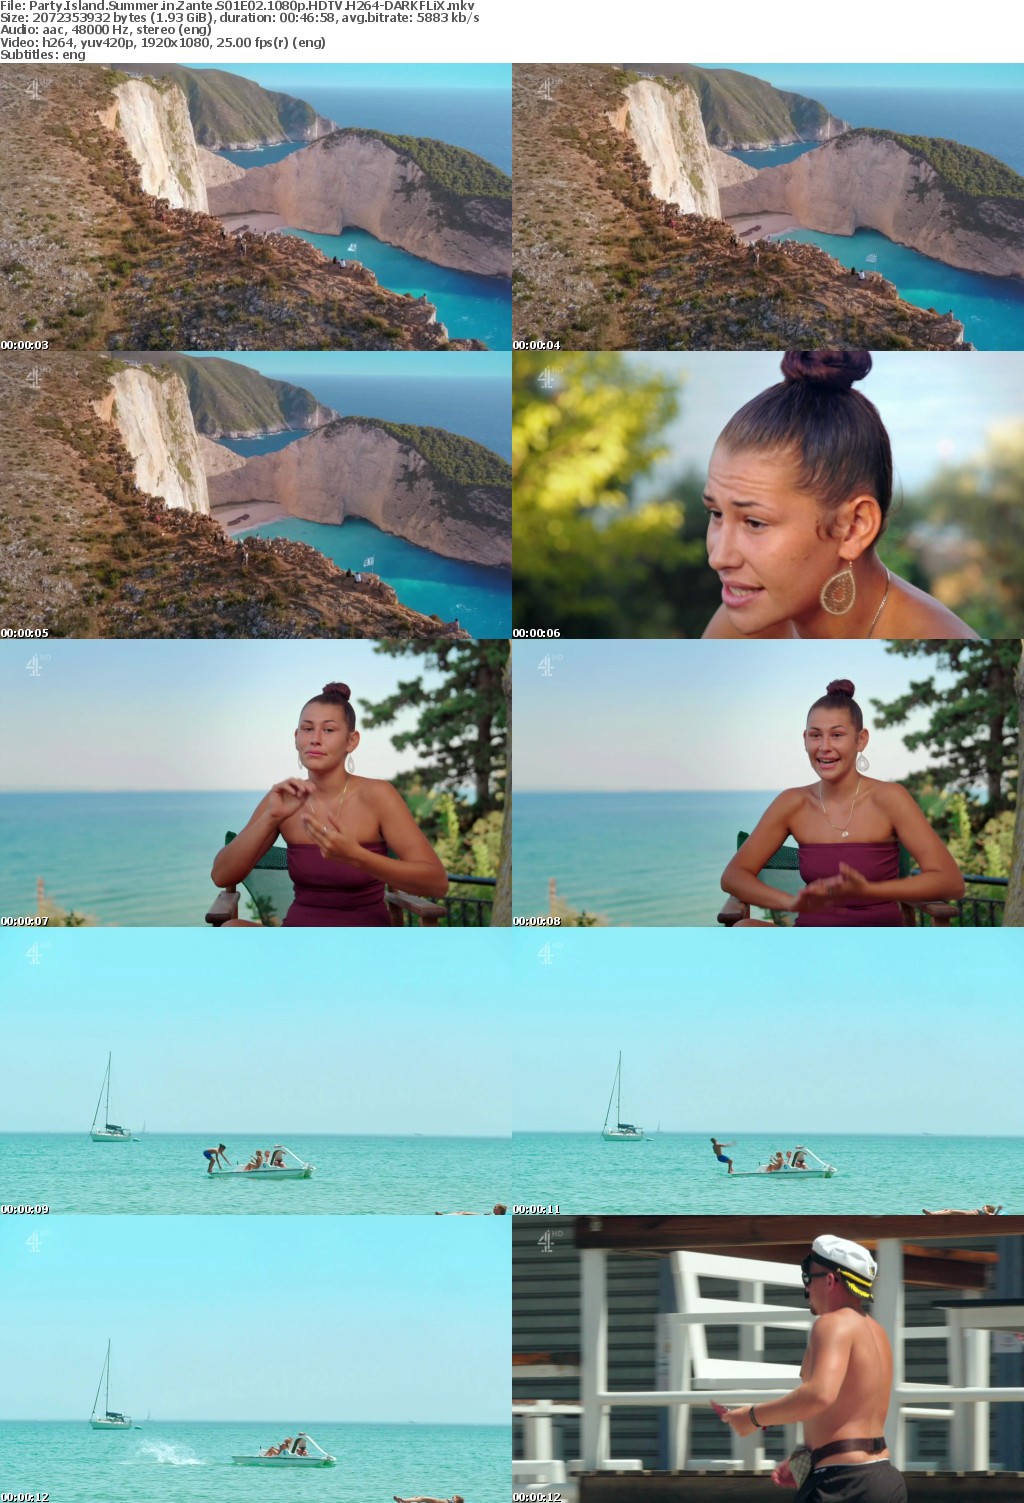 Party Island Summer in Zante S01E02 1080p HDTV H264-DARKFLiX